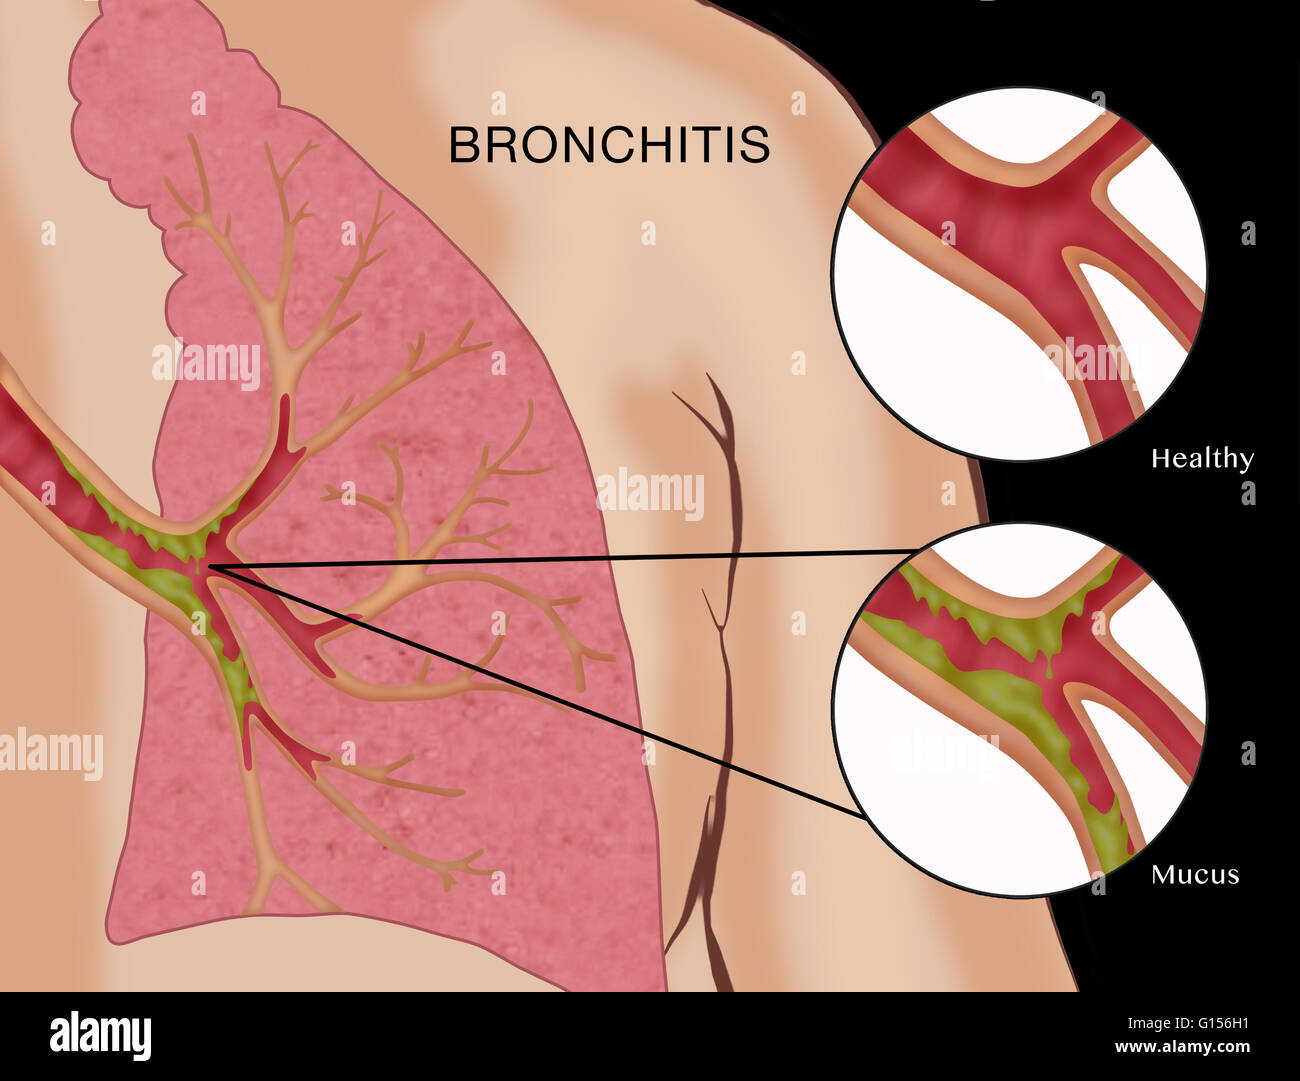 Illustrazione raffigurante la bronchite, una malattia in cui le membrane  mucose dei bronchi (le vie aeree dei polmoni) diventano infiammato e  intasato con il muco. Ci sono due tipi: acuta e cronica.